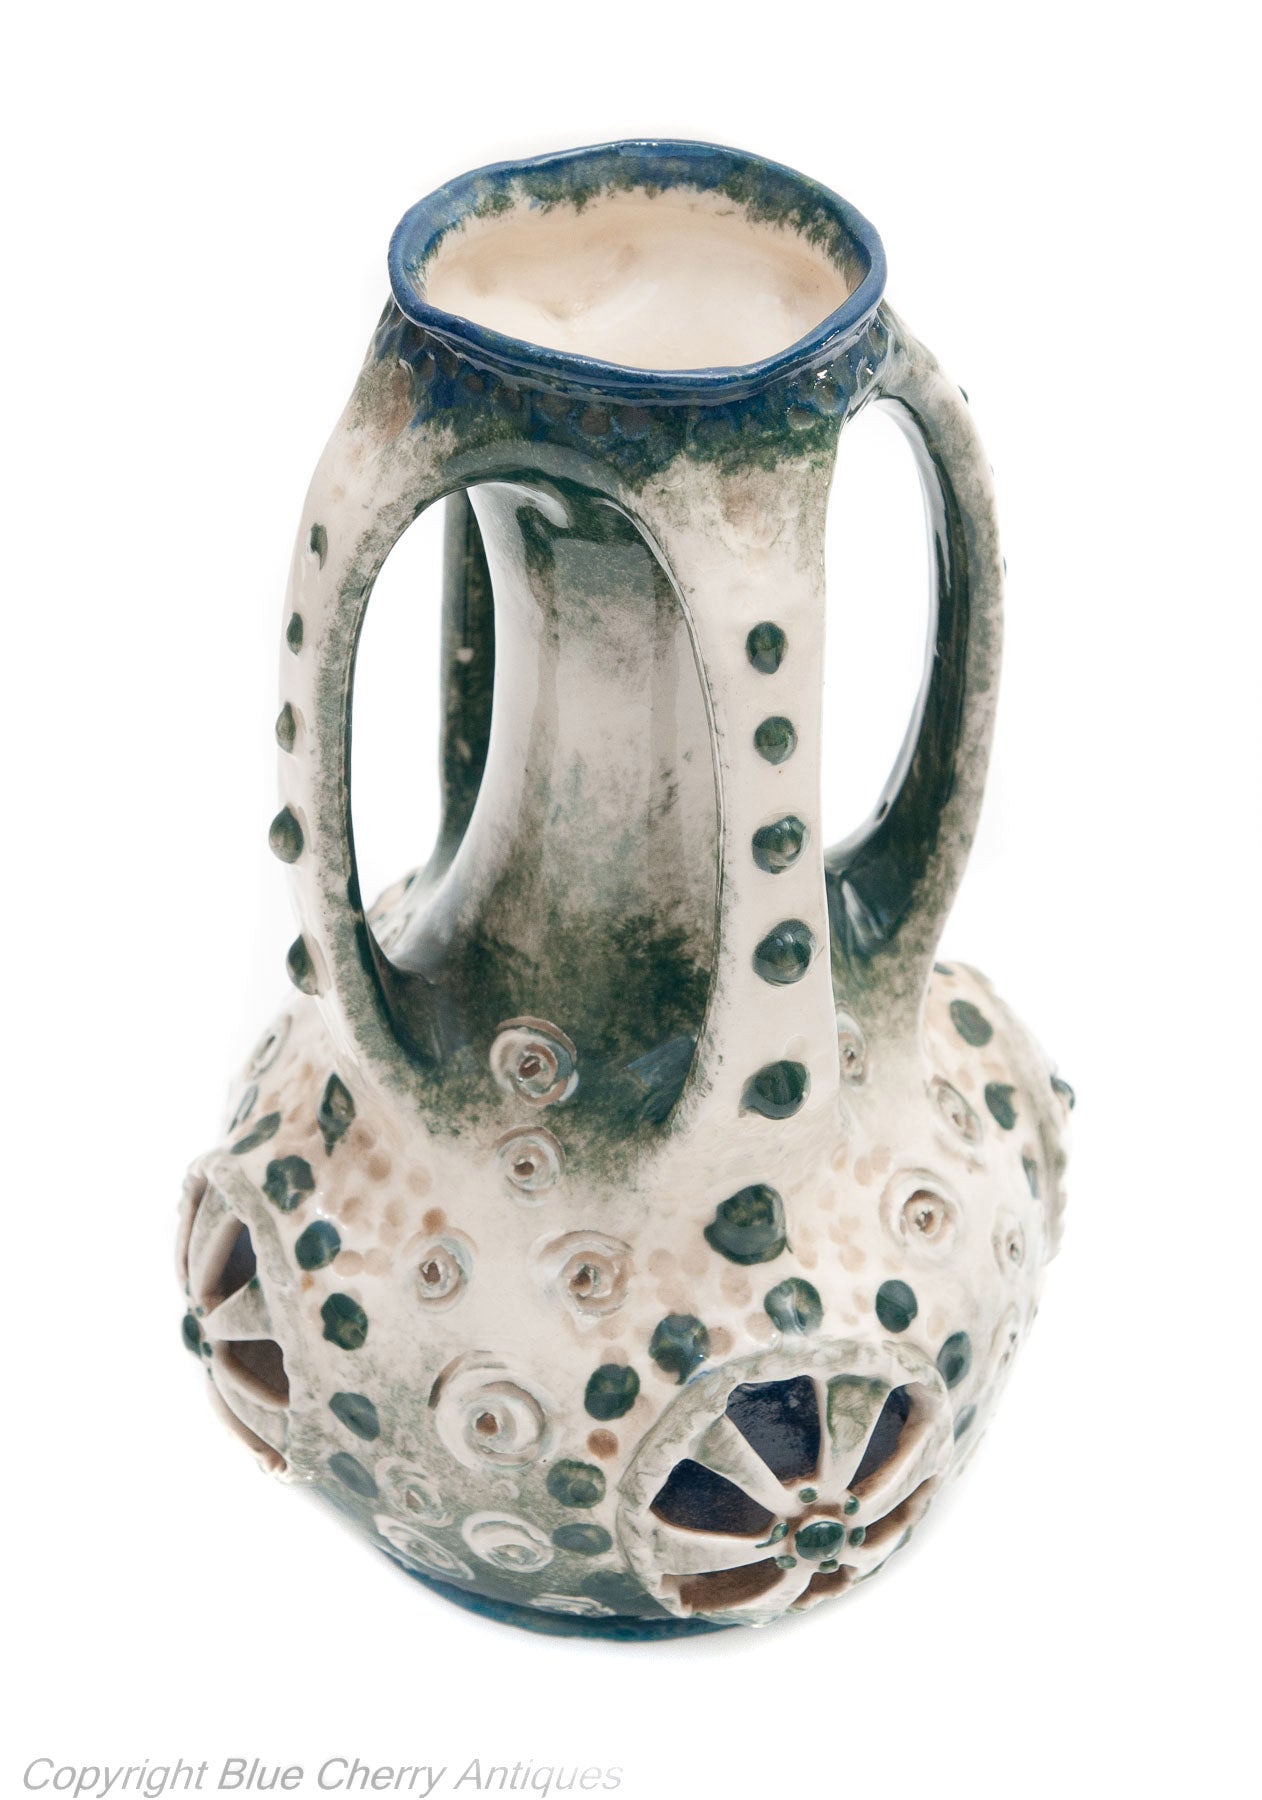 Pair Antique Imperial Amphora Austria Turn Teplitz Art Pottery Morania Vases (Code 1650)